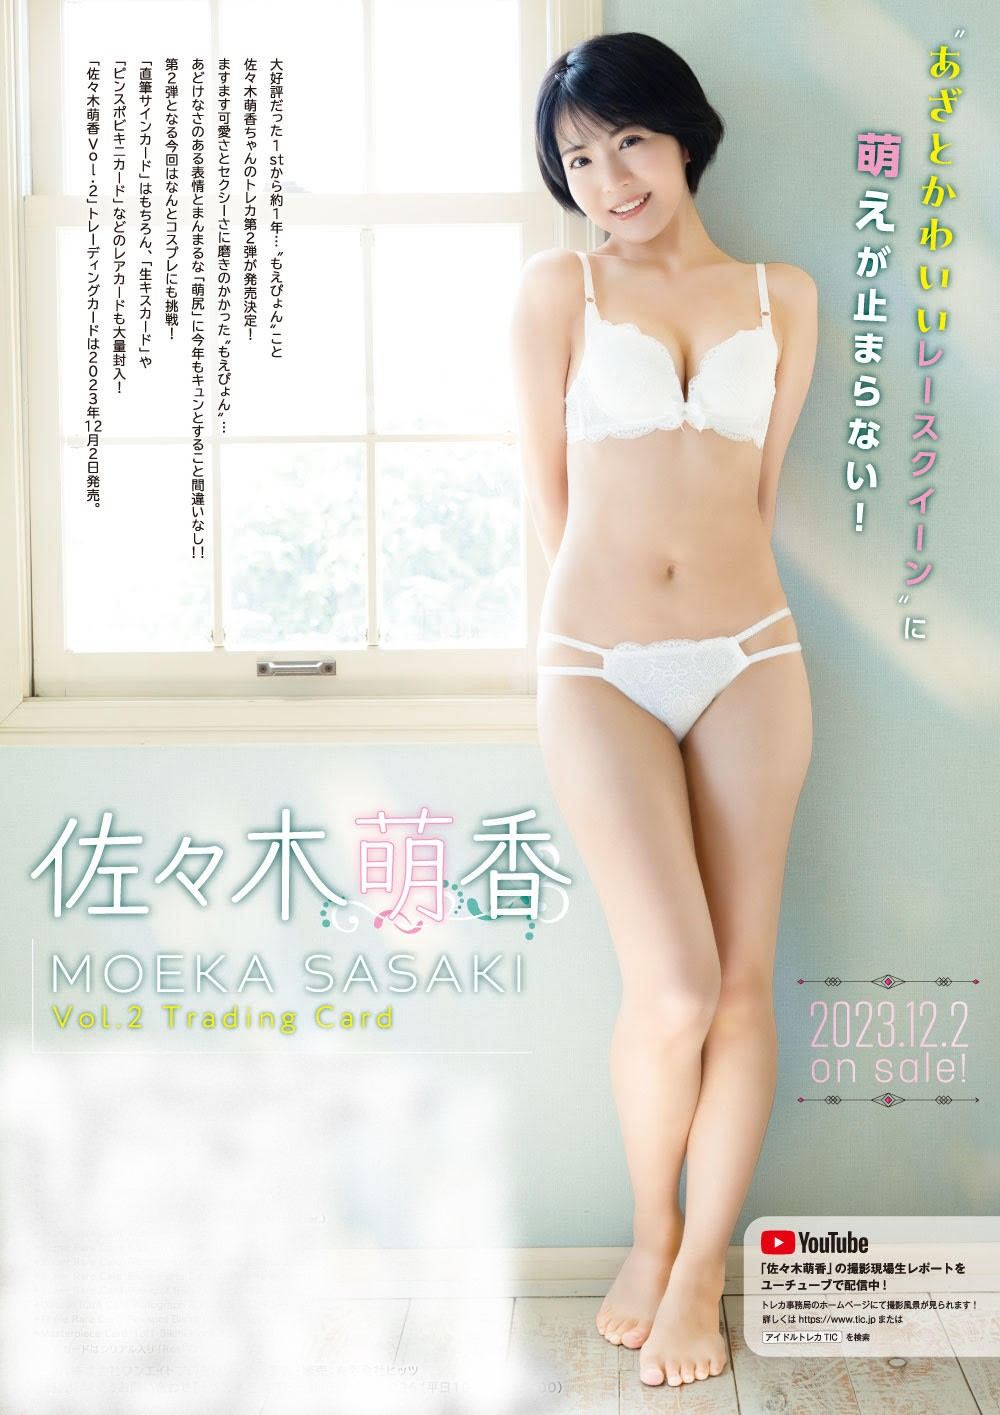 Moeka Sasaki Vol. 2 Trading Card Hits